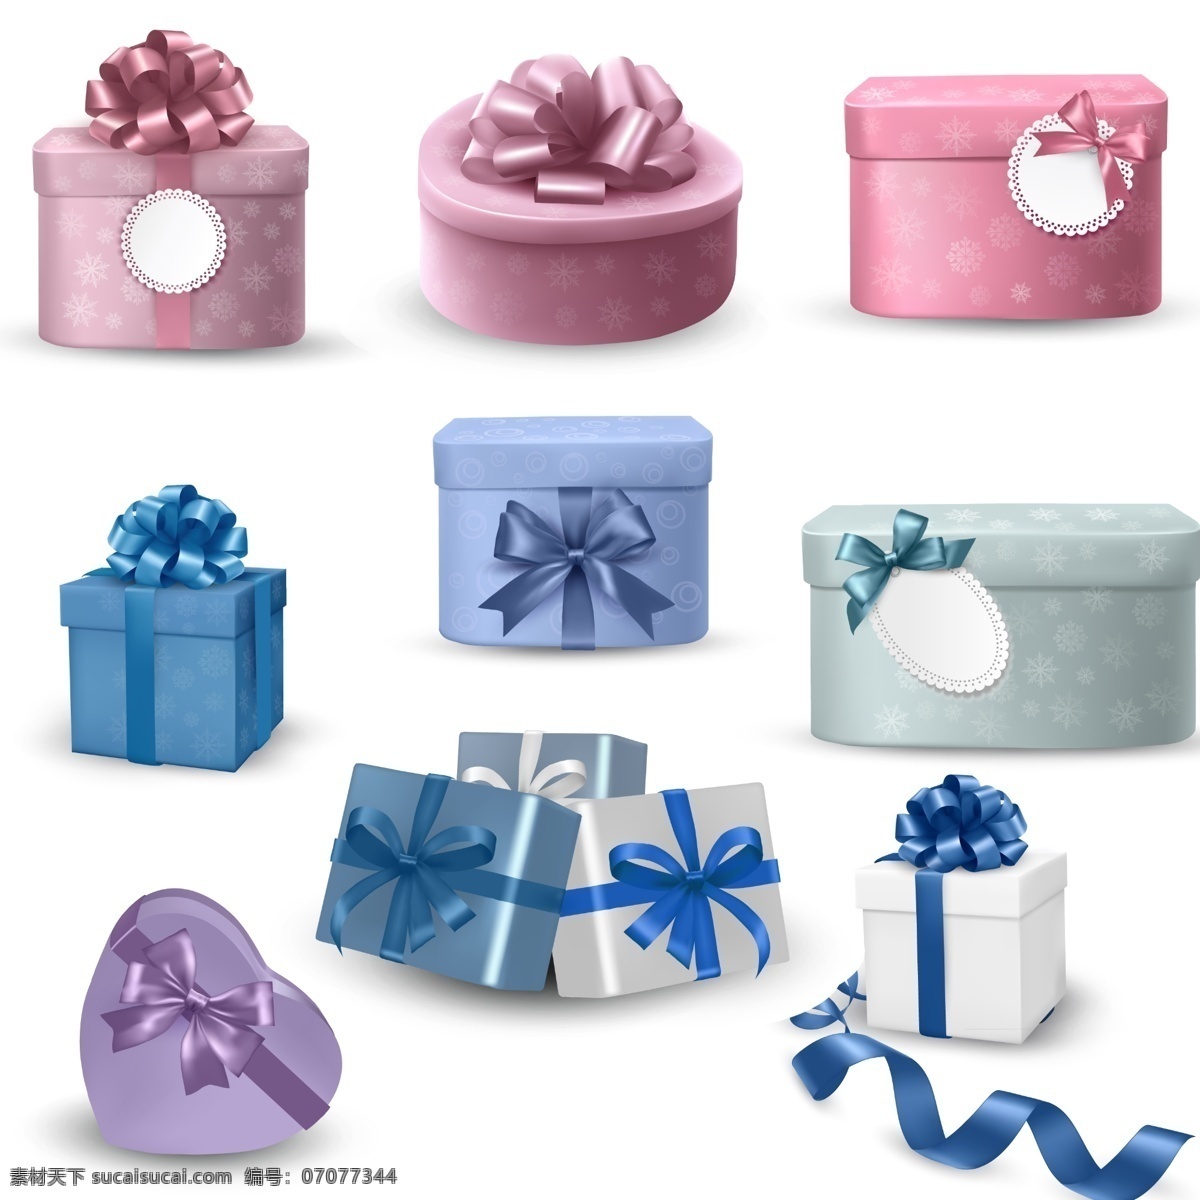 礼物 礼物psd 礼物素材 礼盒素材 礼盒psd 粉色礼盒 蓝色礼盒 蝴蝶结 心形礼盒 圆形礼盒 方形礼盒 礼盒堆 广告元素